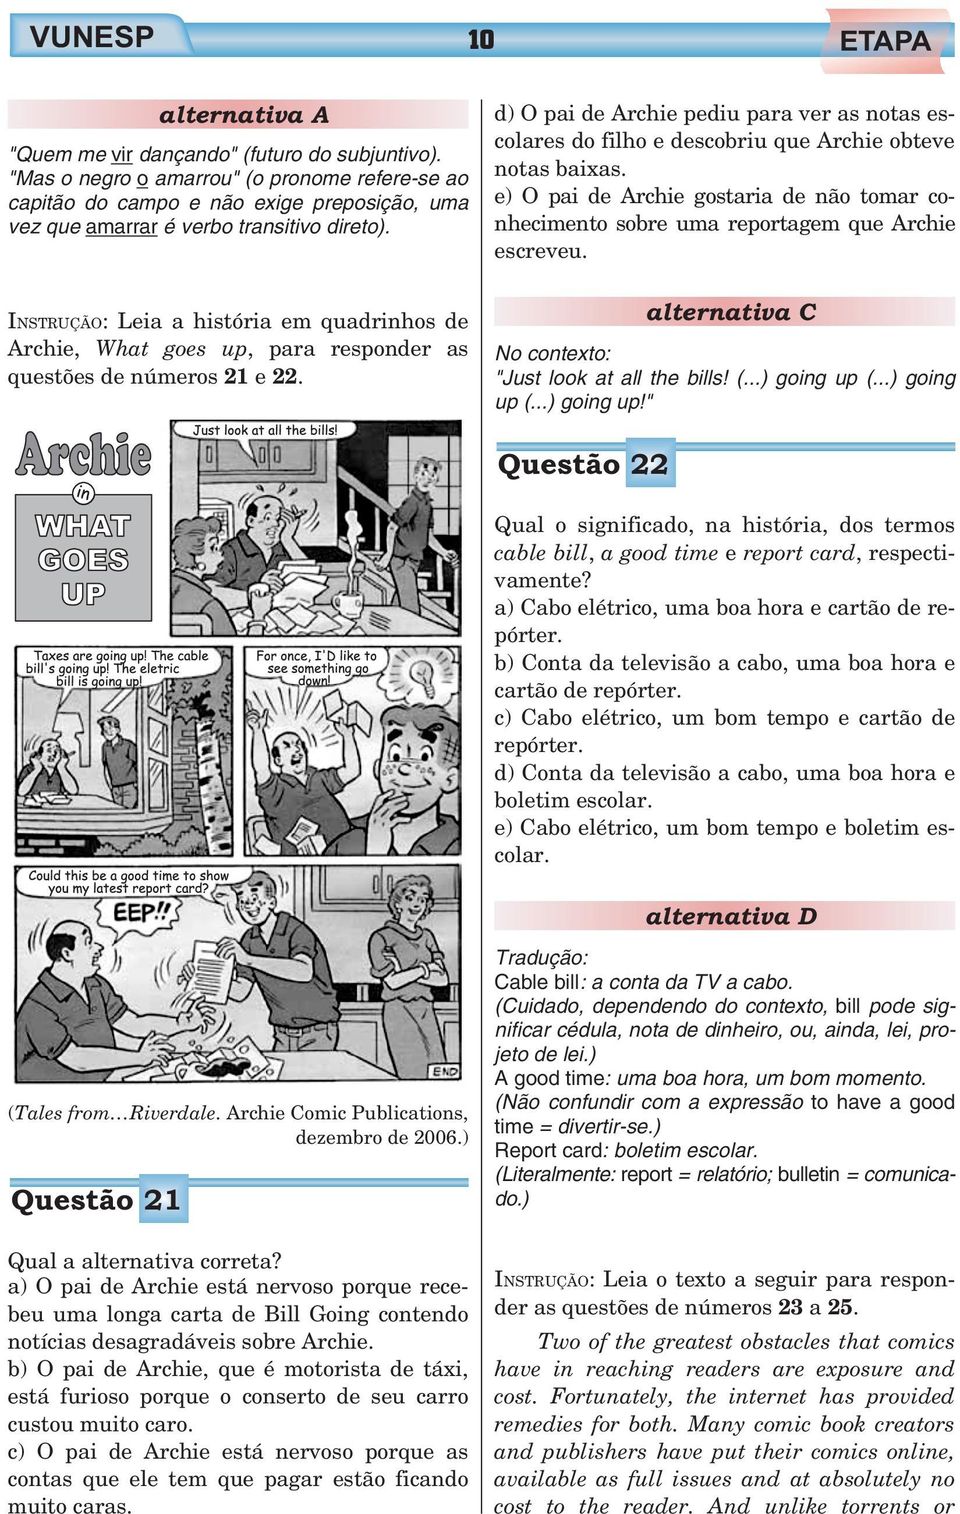 INSTRUÇÃO: Leia a história em quadrinhos de Archie, What goes up, para responder as questões de números 21 e 22.